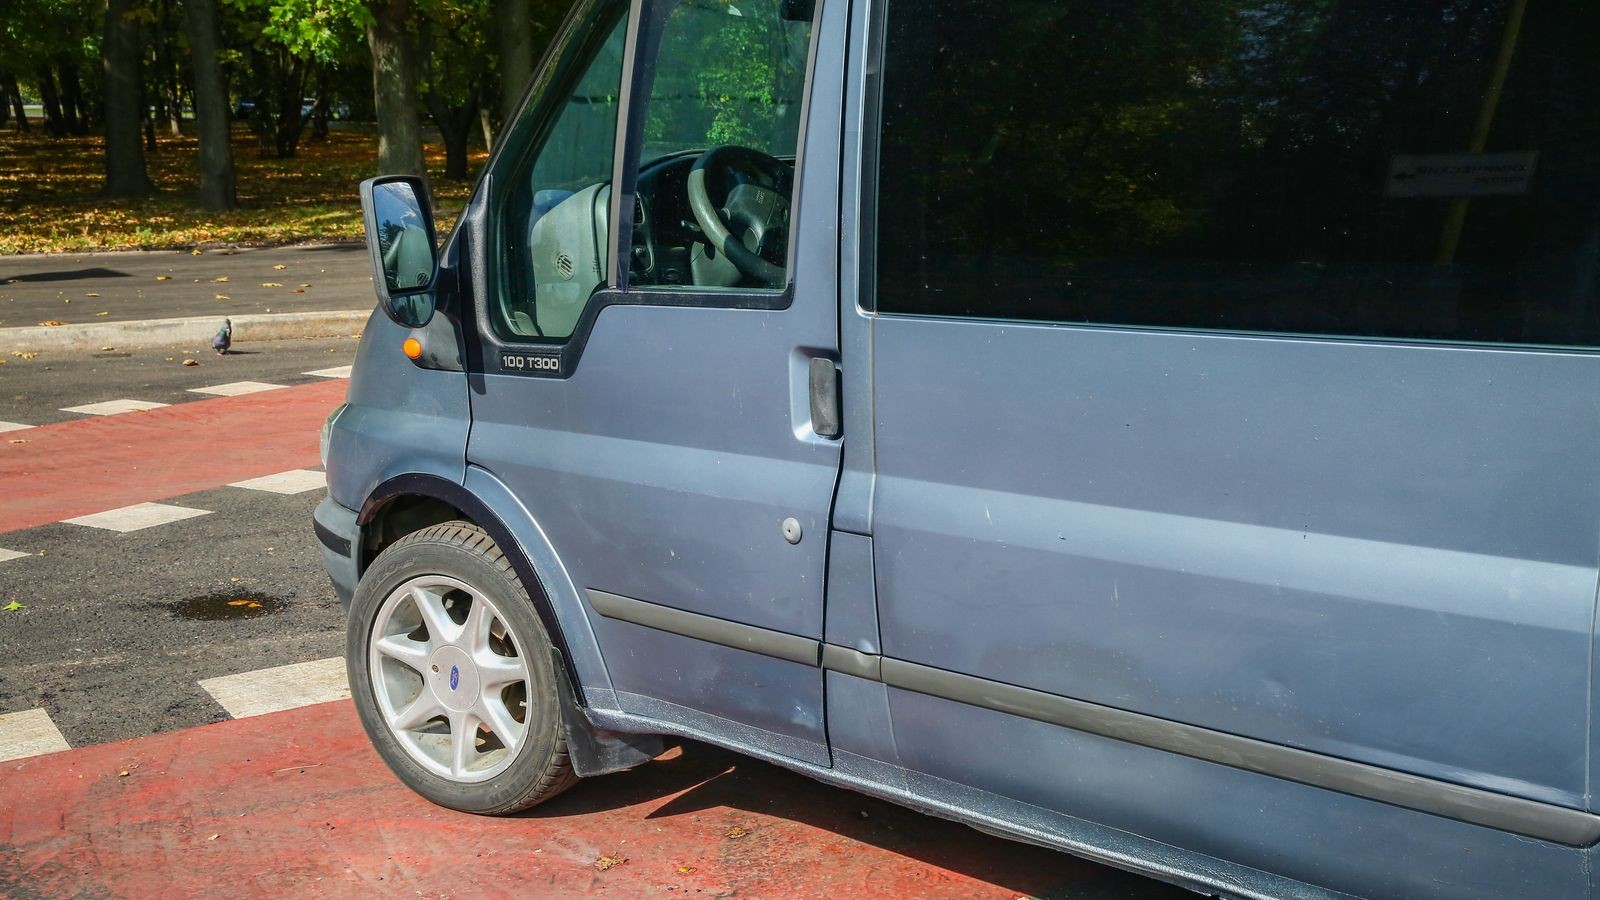 Ford Transit VI с пробегом: кузов, салон, электрика, подвеска, тормоза - – автомобильный журнал